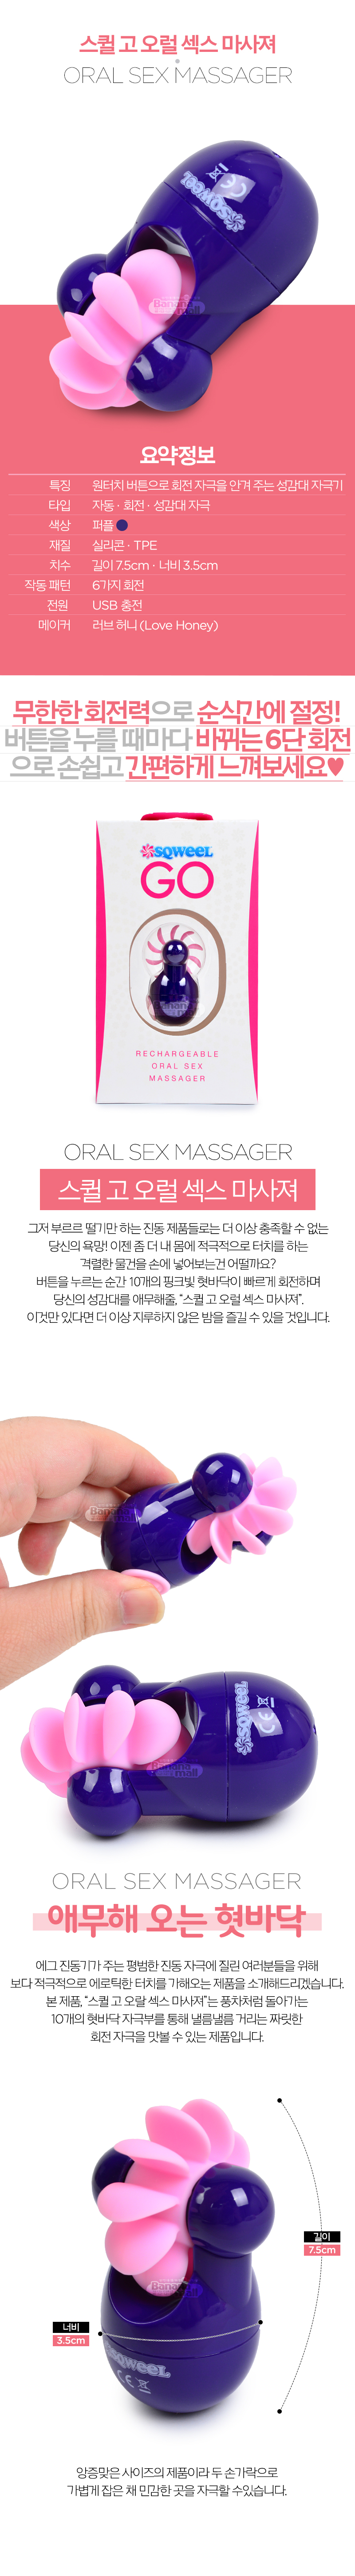 [6단 회전] 스퀼 고 오럴 섹스 마사져(Sqweel Go USB Rechargeable Oral Sex Massager)